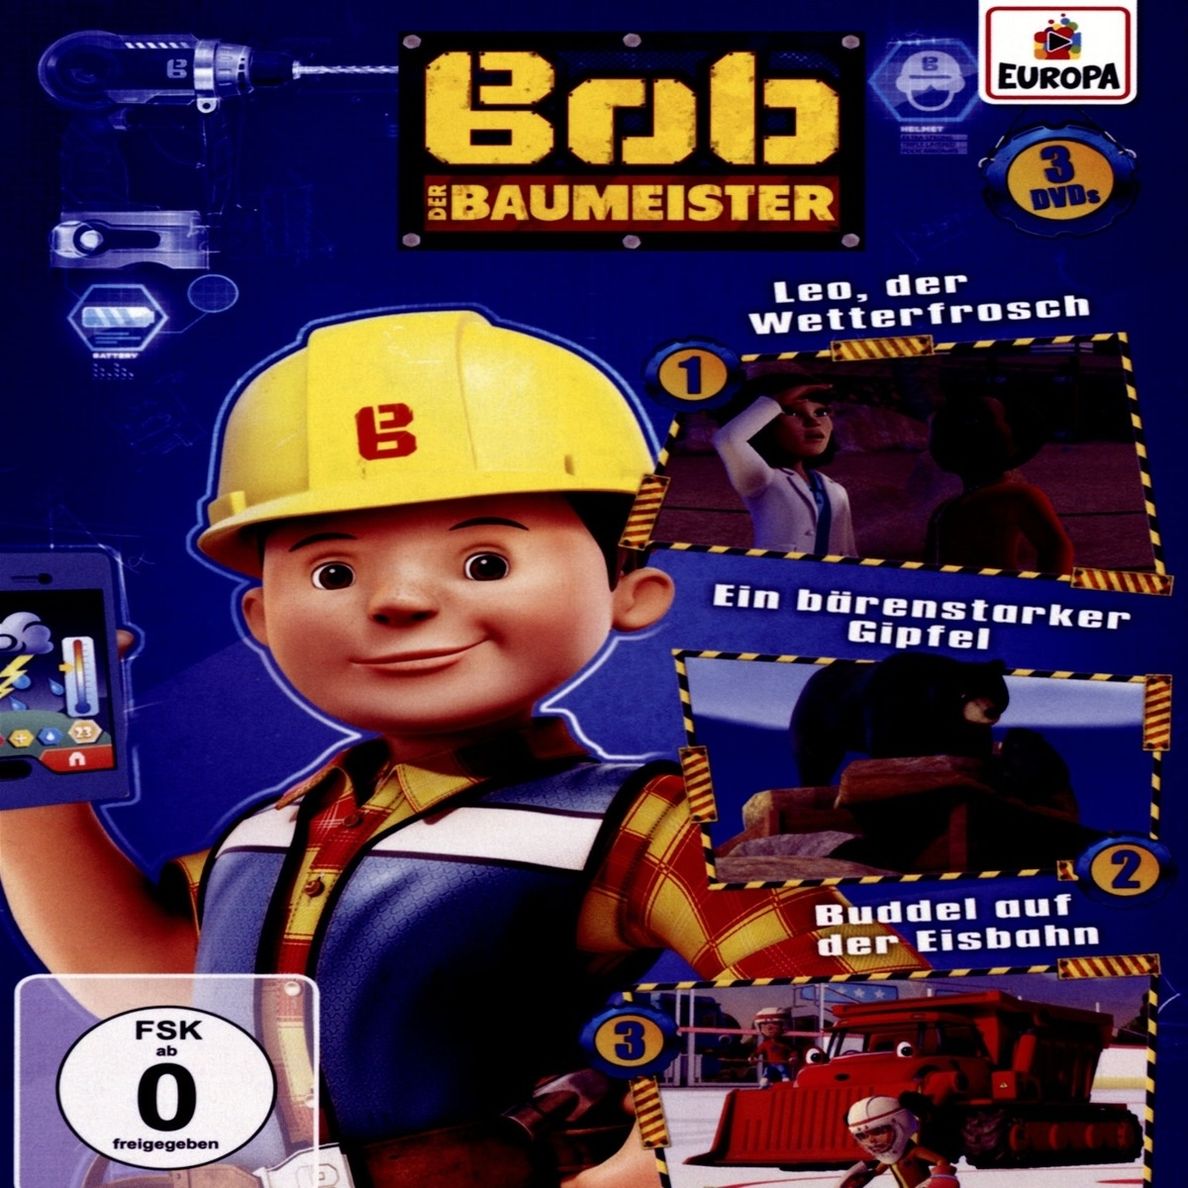 Bob der Baumeister - 3er Box auf DVD - jetzt bei bücher.de bestellen